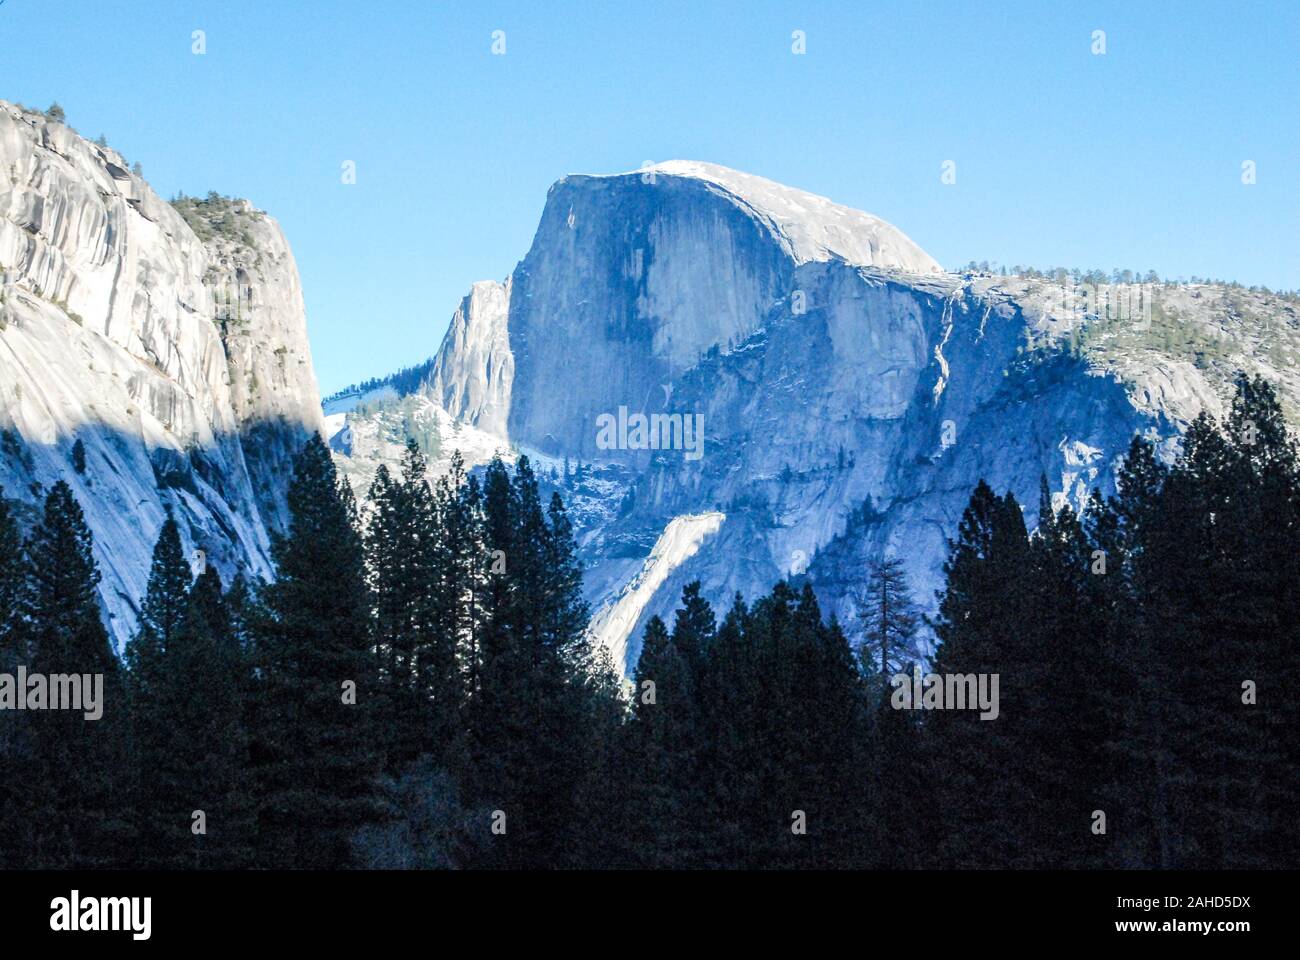 Half Dome, Yosemite Valley, California Stock Photo